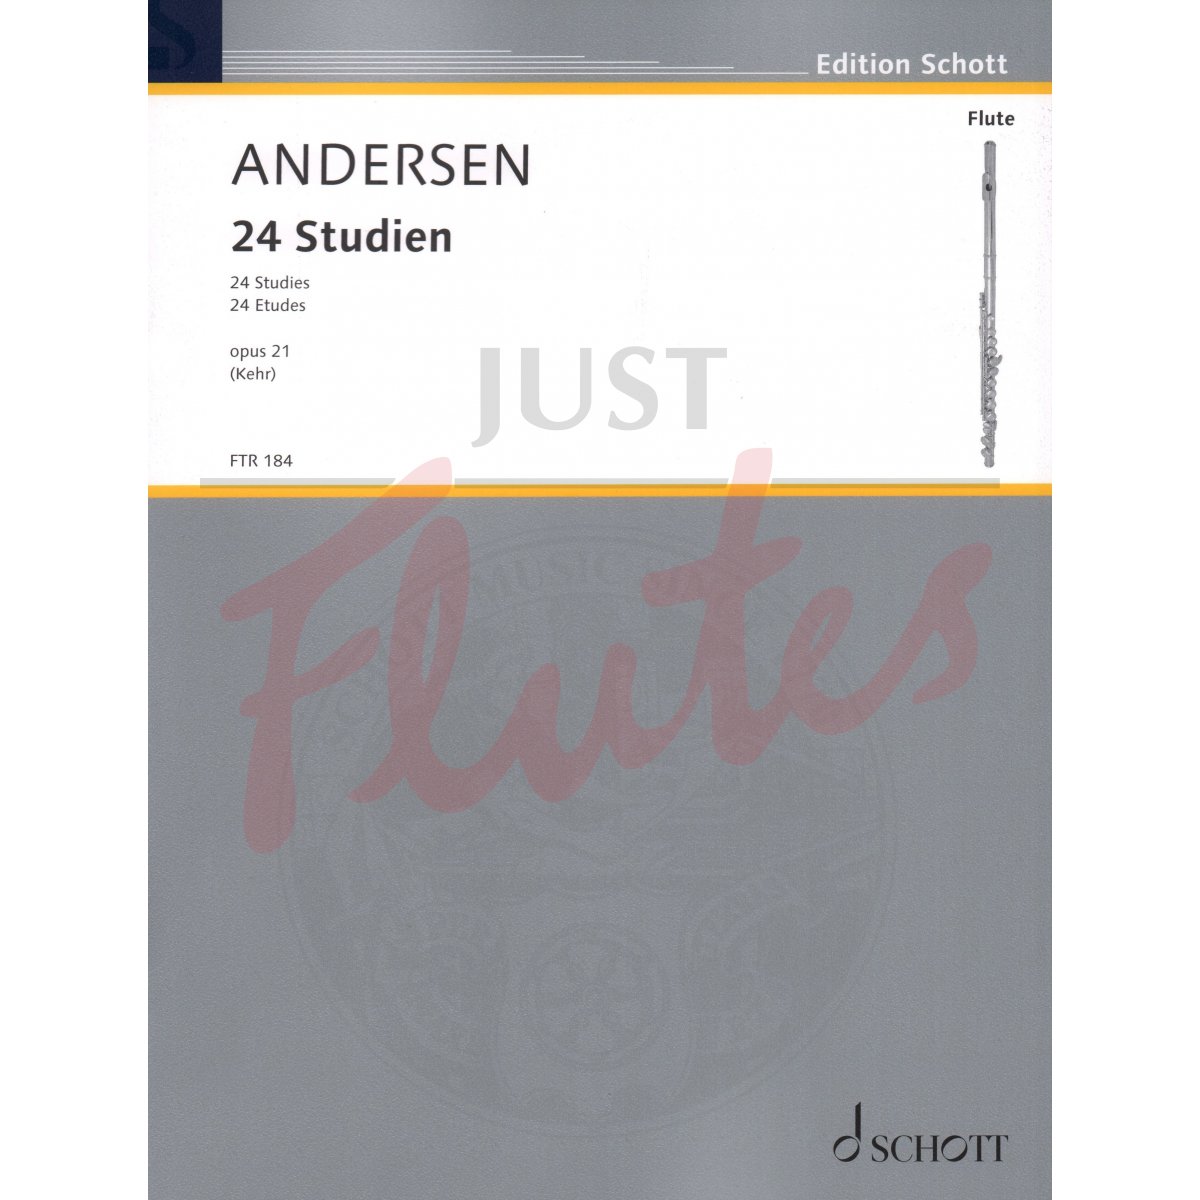 24 Studies for Flute